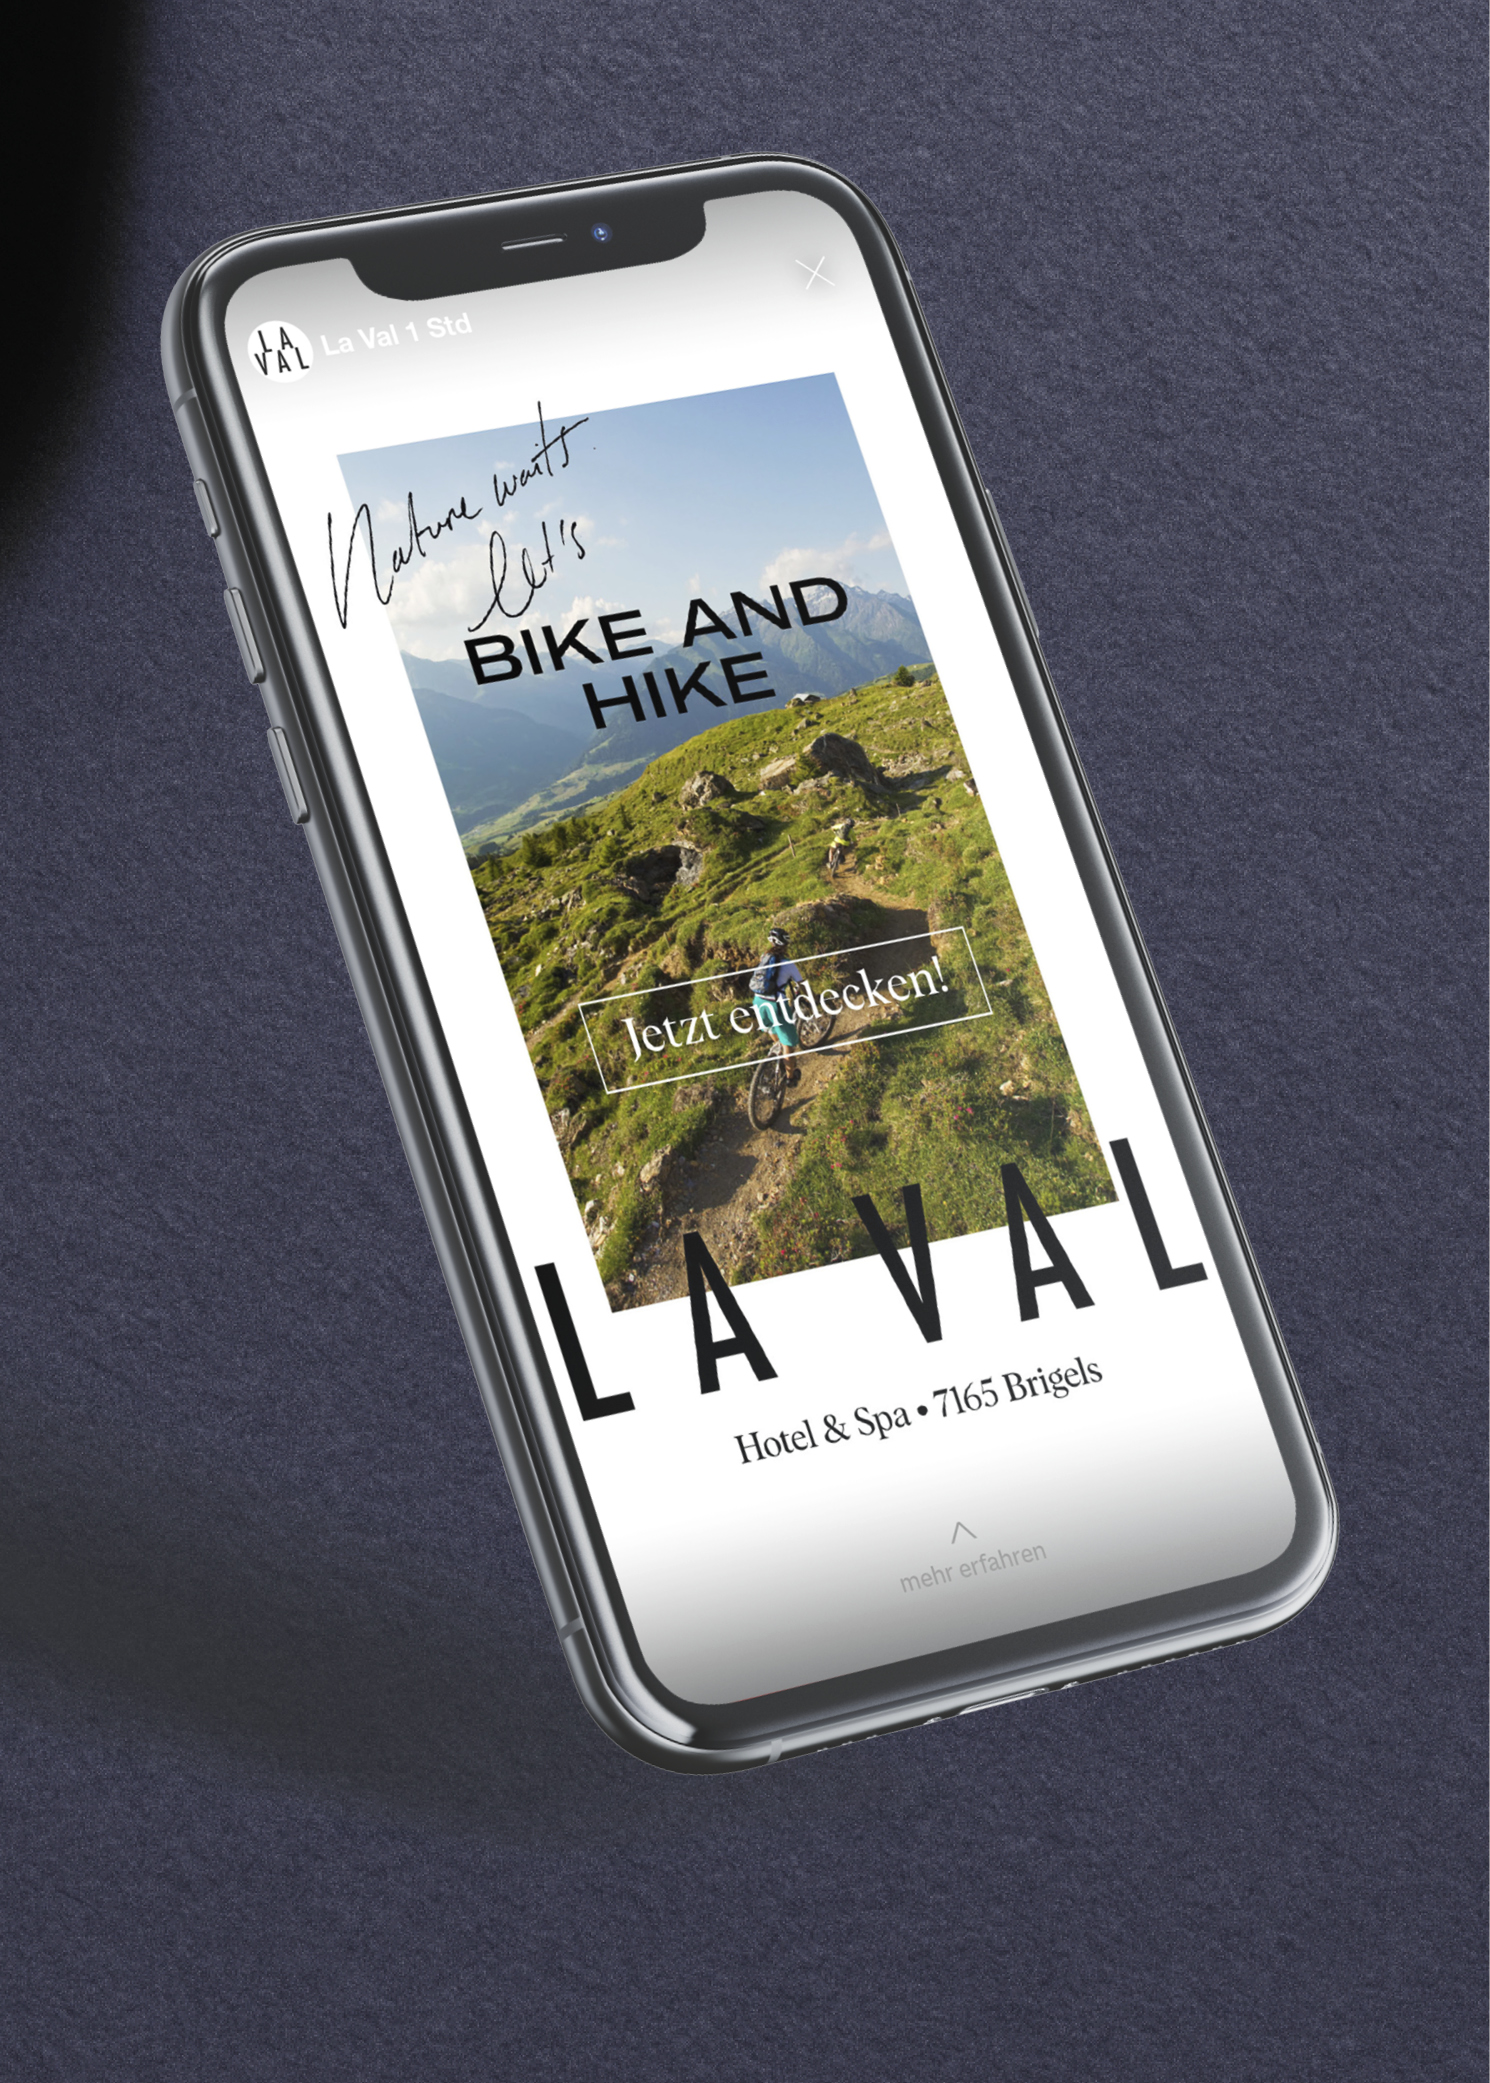 Iphone mit Vollbildanzeige einer Socialmedia-Werbekampagne für das Hotel & Spa brigels in Graubünden